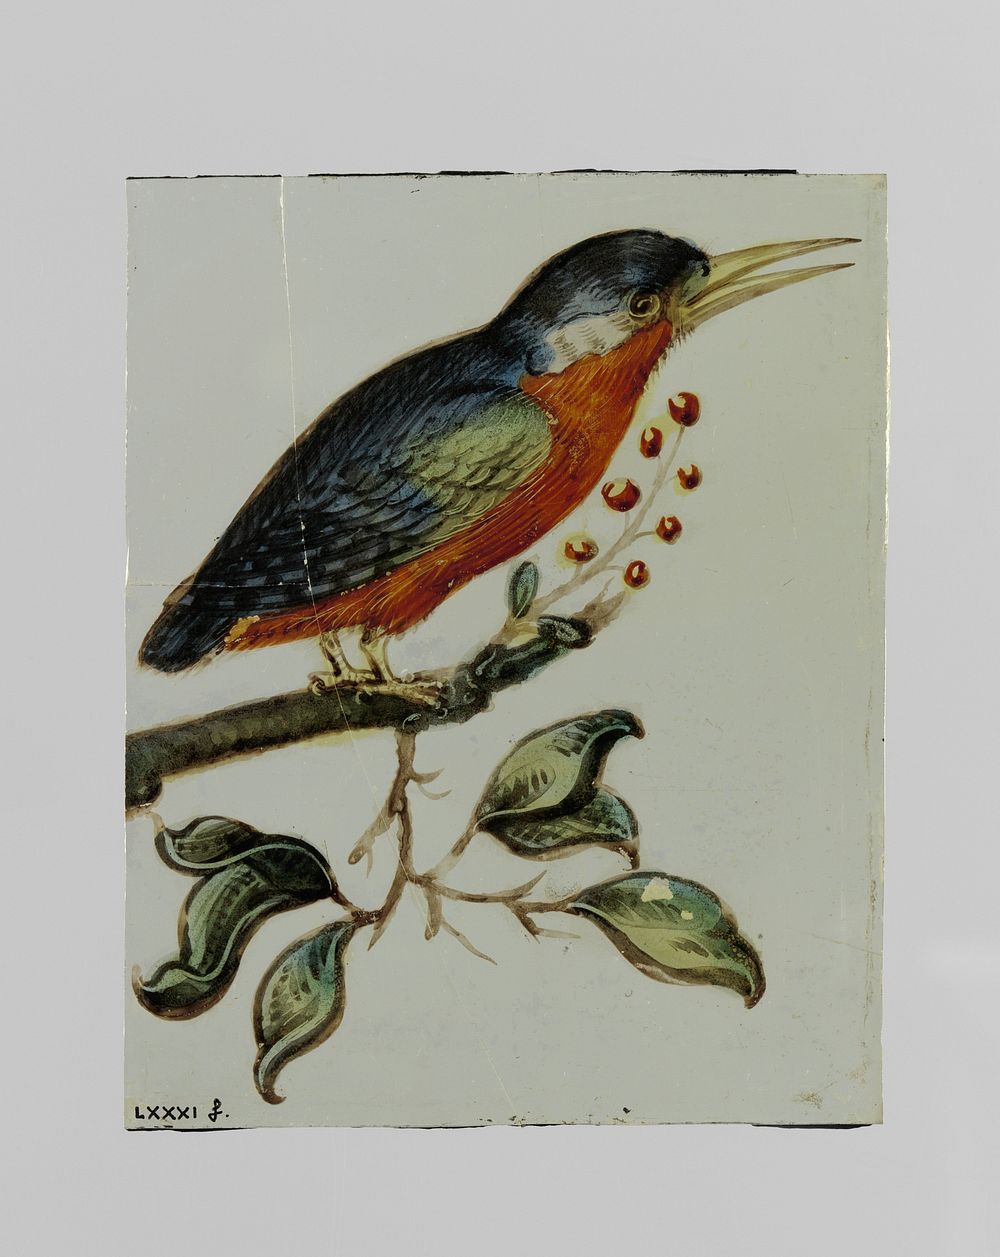 Ruit met een vogel gezeten op een tak met bessen (c. 1650 - c. 1675) by anonymous